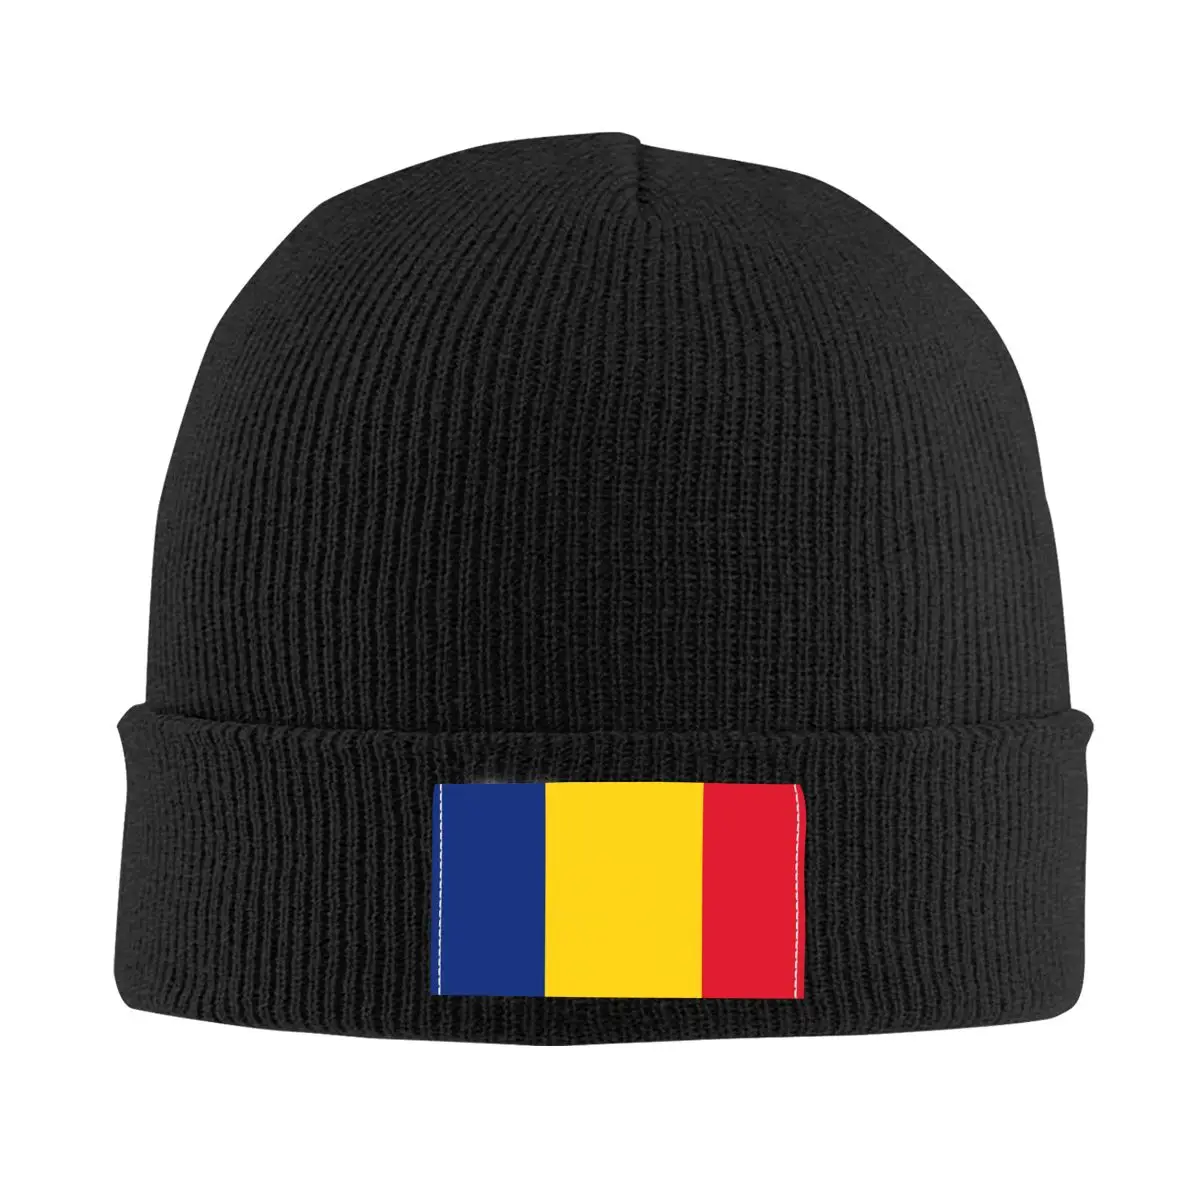 

Шапка унисекс с флагом Румынии, зимняя теплая шапка, мужские вязаные шапки, крутые лыжные шапочки для улицы, облегающие шапки